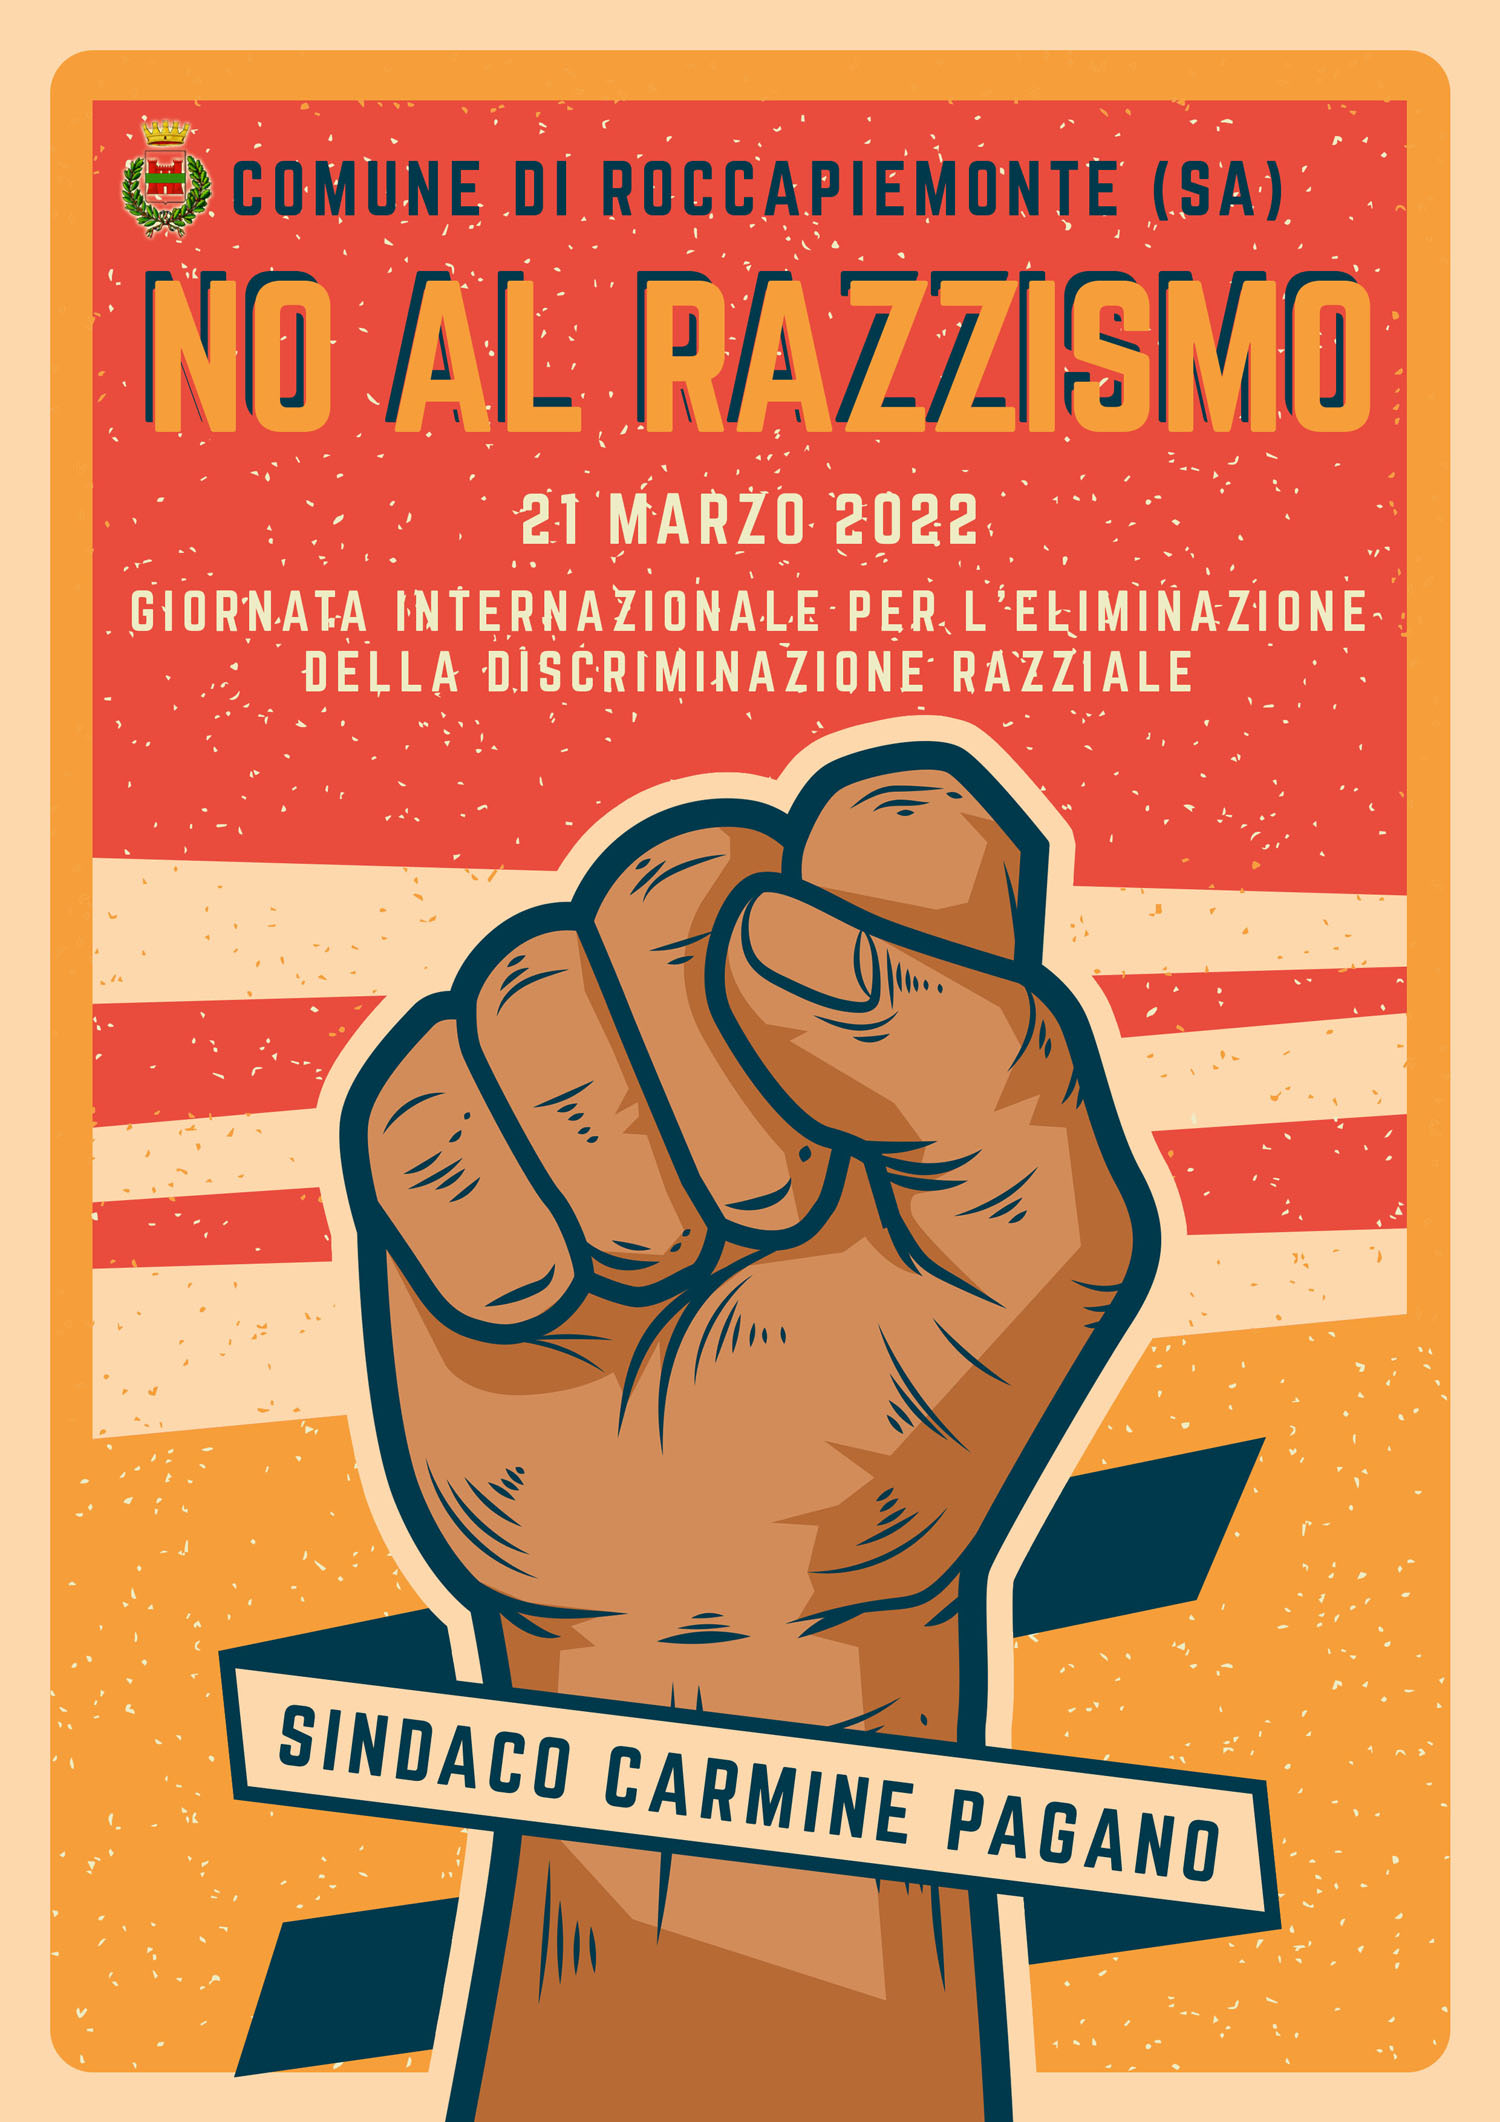 Roccapiemonte: Giornata Internazionale per Eliminazione Discriminazioni Razziali, Sindaco Pagano “Impegno di tutti”